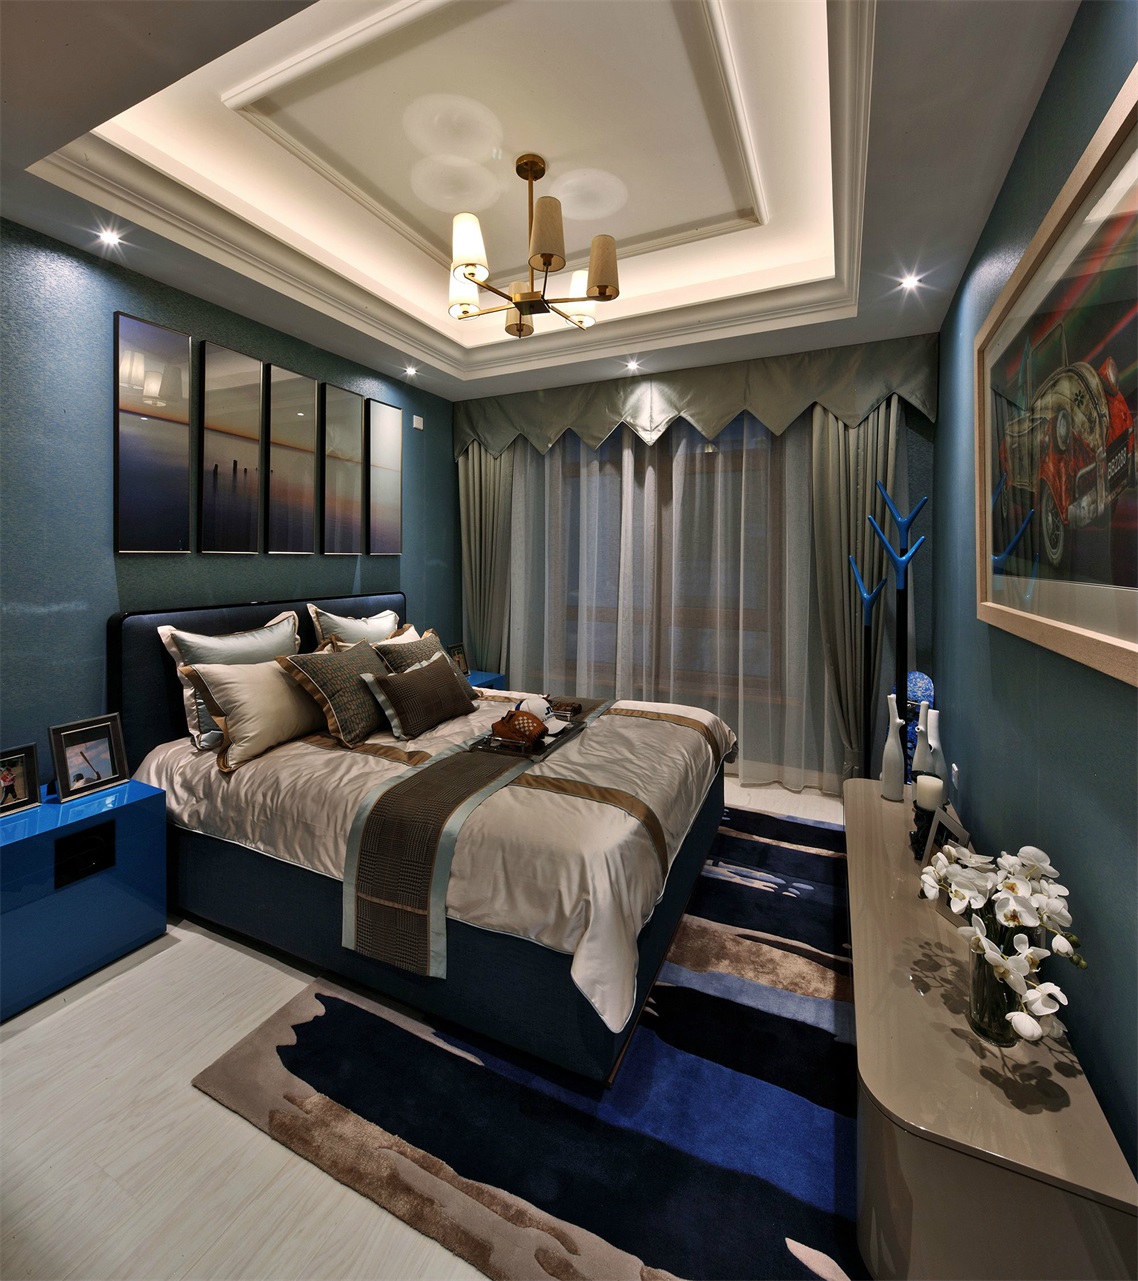 深蓝色的墙壁和顶面线条形成对比，让人在次卧空间中不再感到空旷。